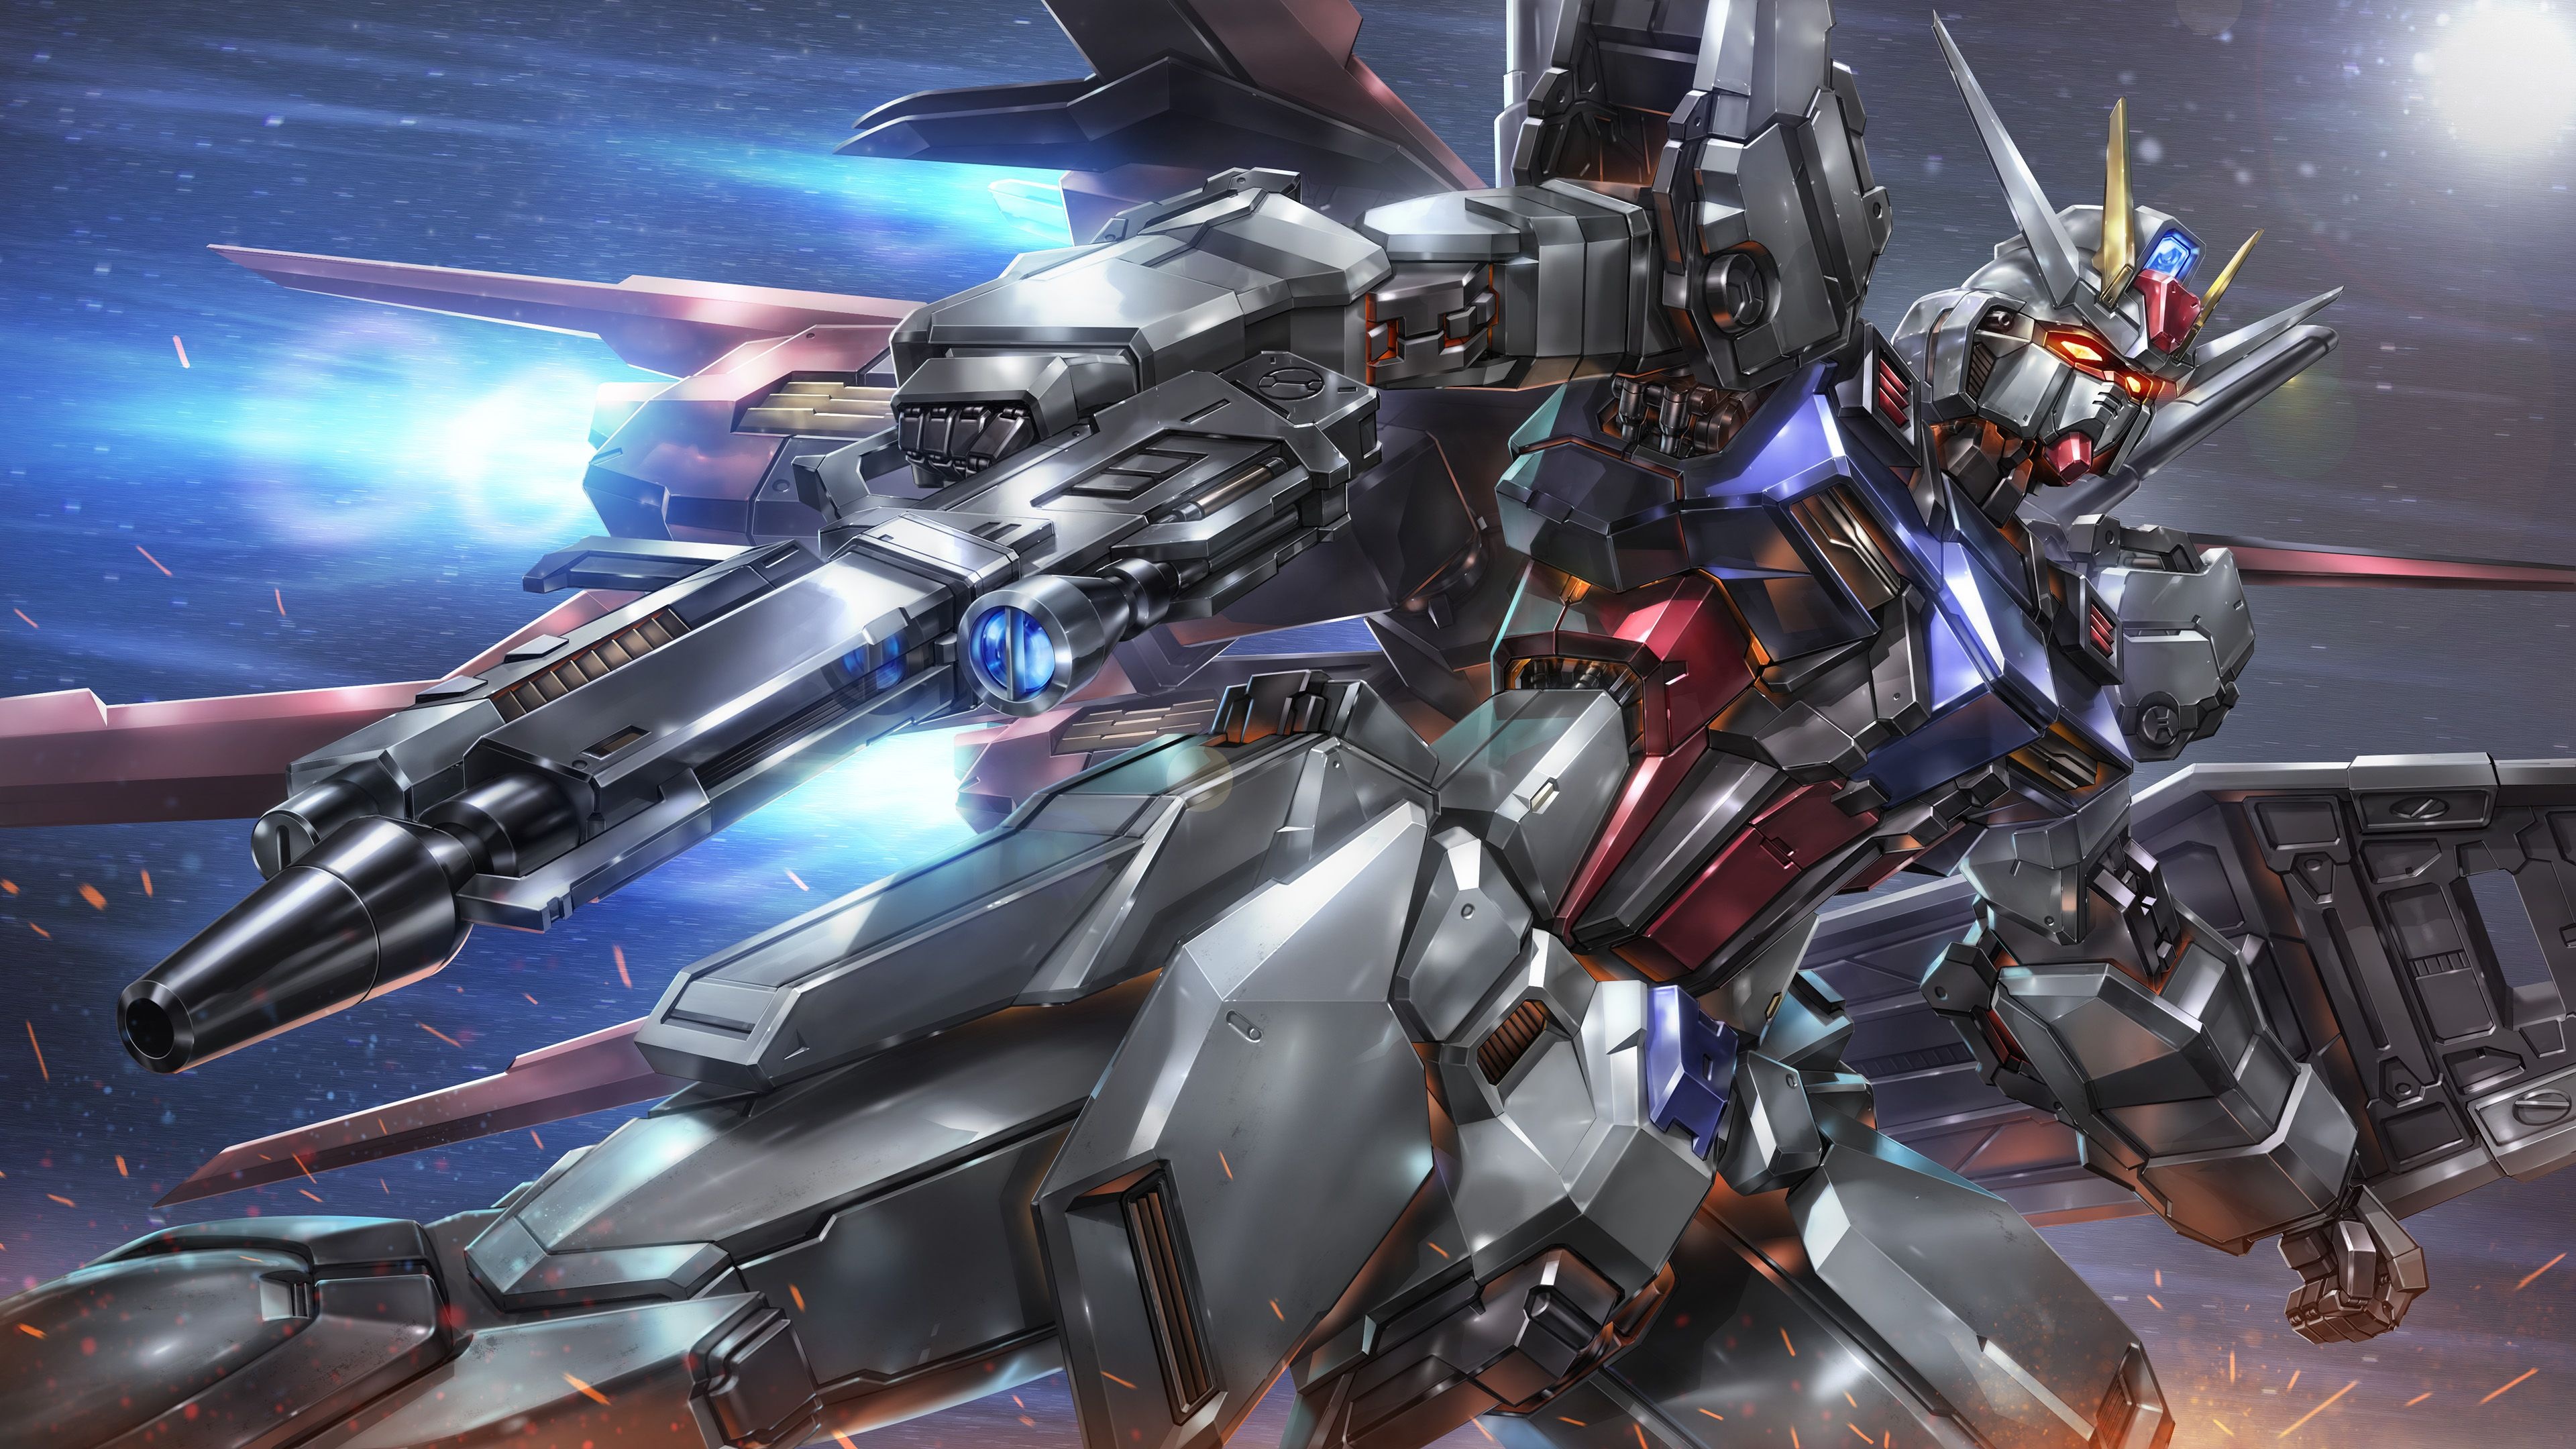 GAT-X105, Gundam SEED Wallpaper, 3840x2160 4K Desktop